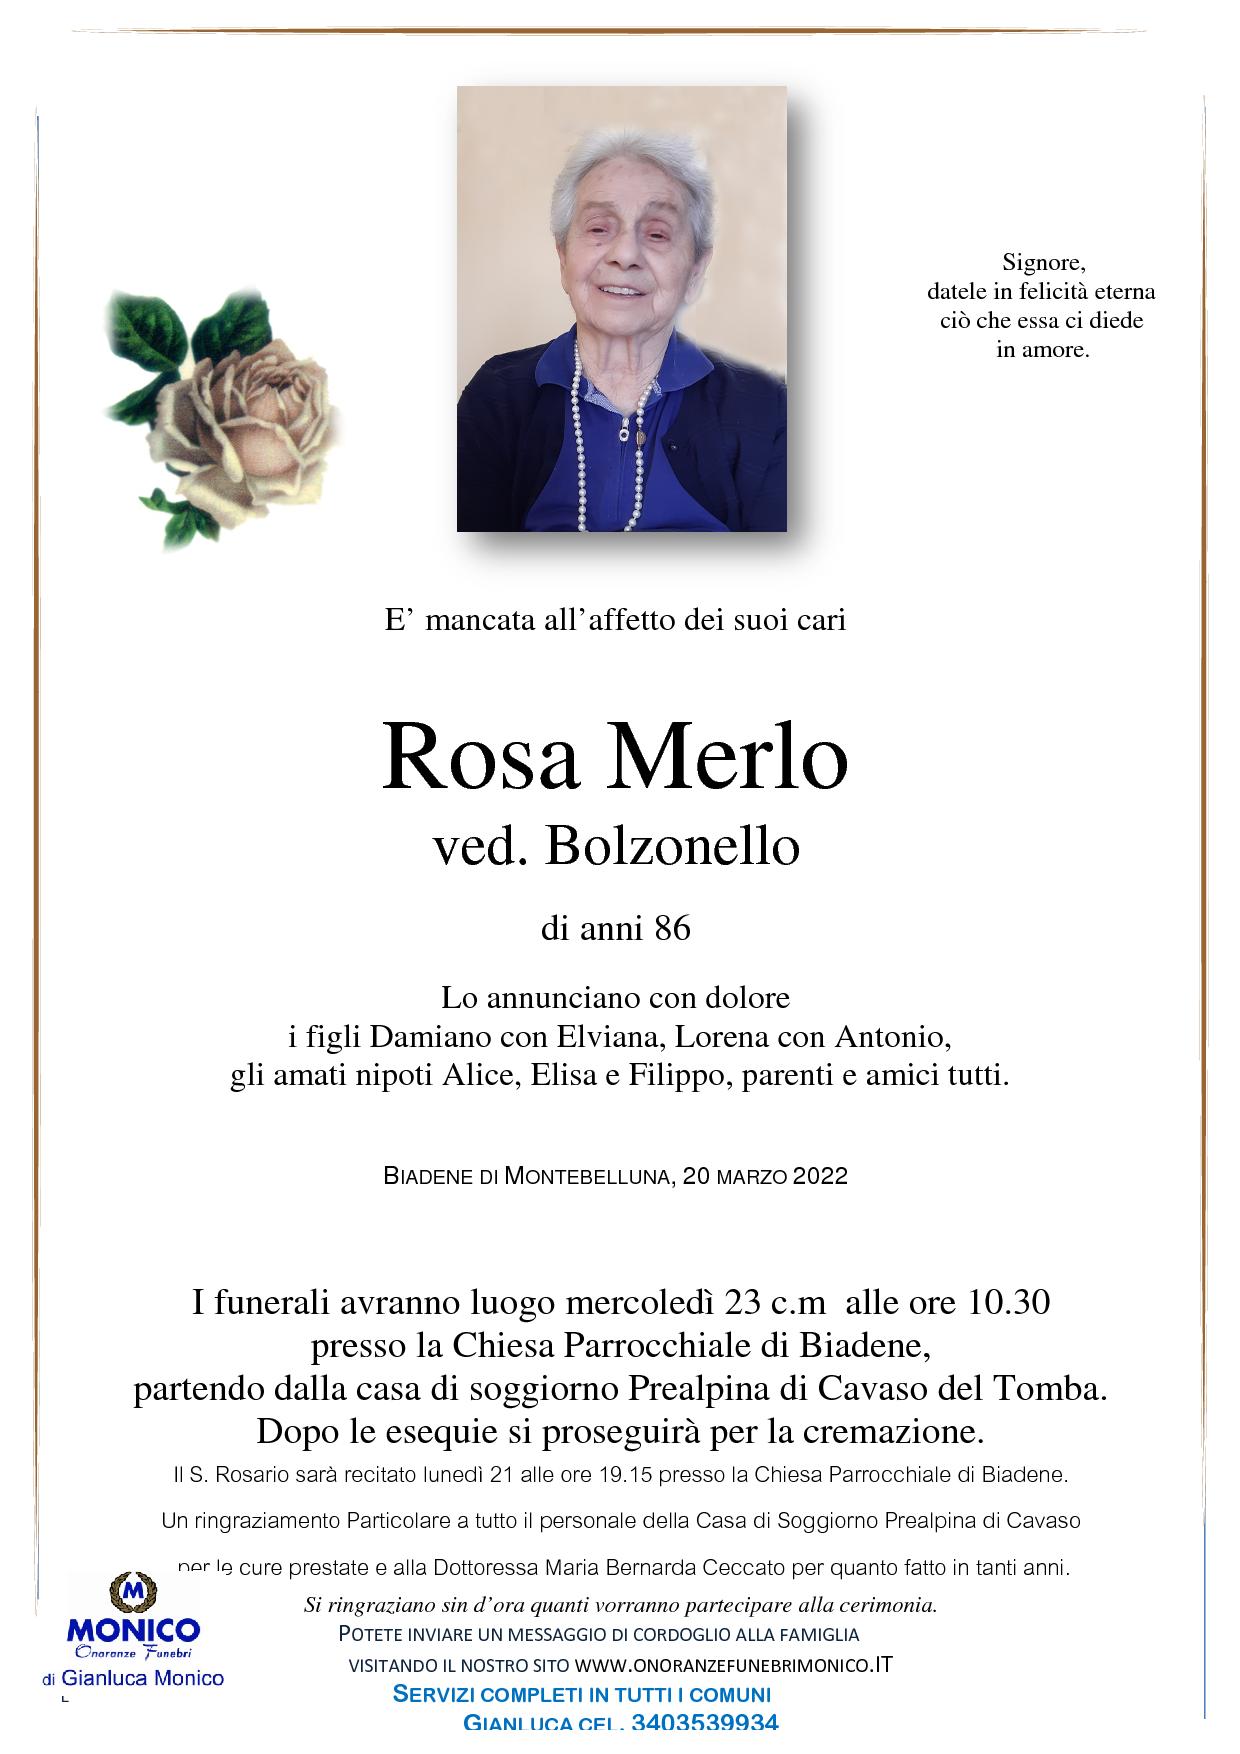 Merlo Rosa